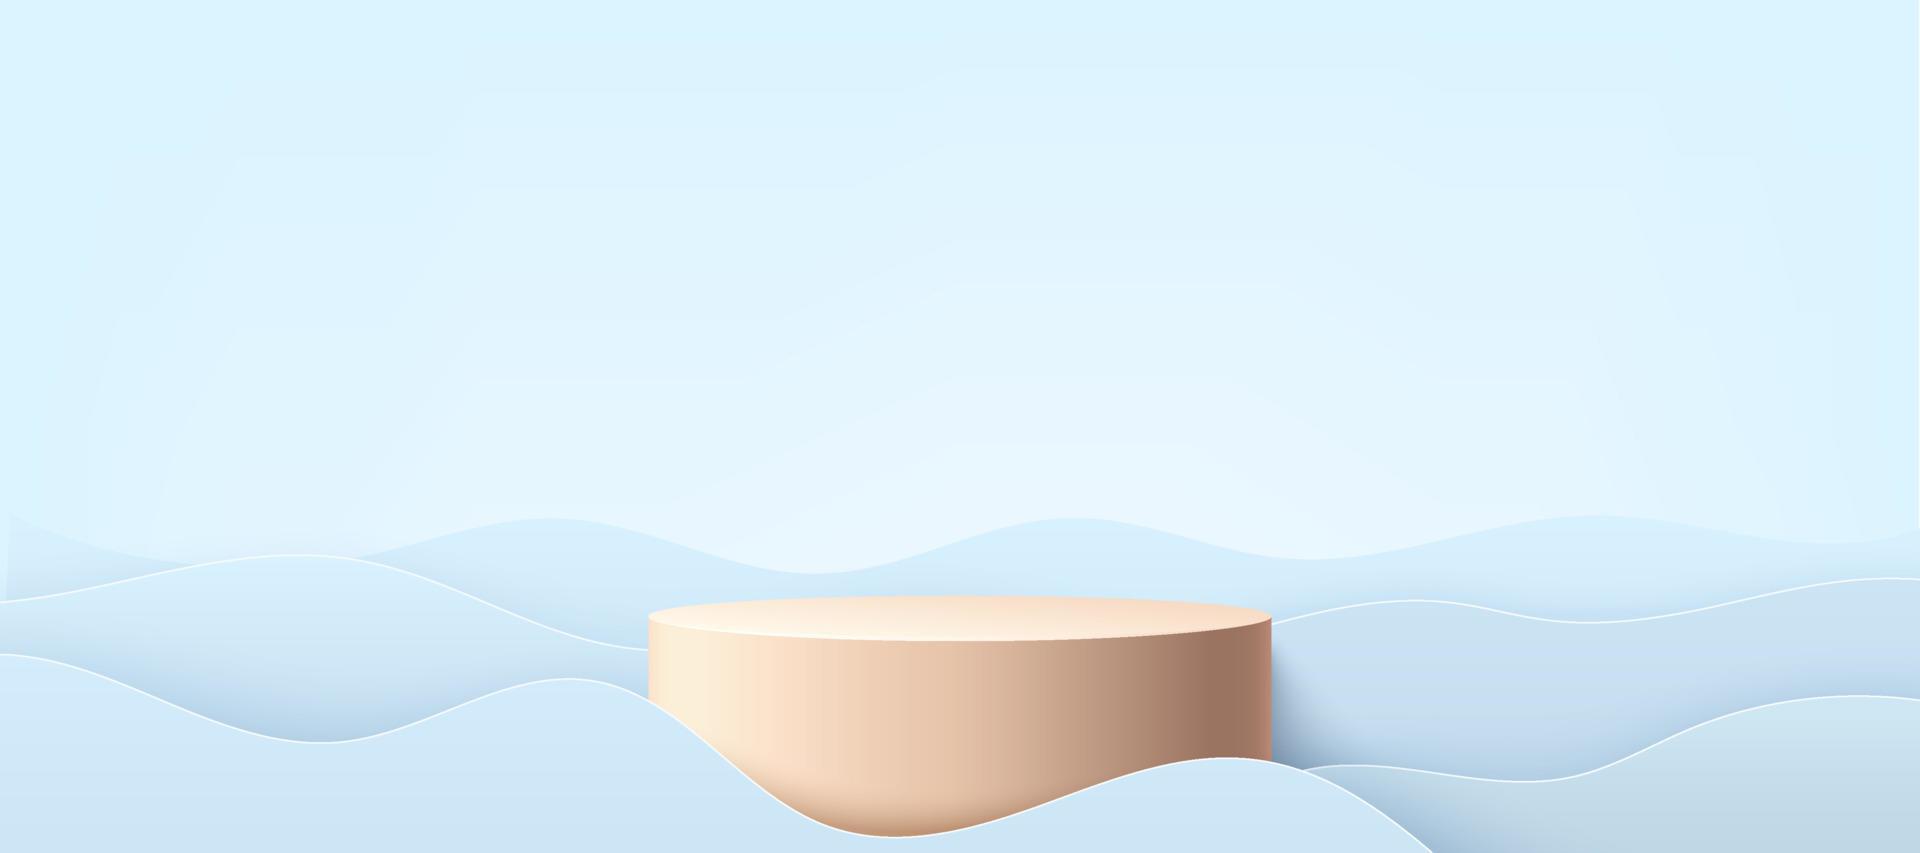 pódio de pedestal de cilindro pastel de luxo. camadas de cor azul e cinza claro acenam o cenário de forma líquida. vetor moderno renderização em forma 3d para apresentação de exibição de produtos cosméticos. projeto de cena abstrato.